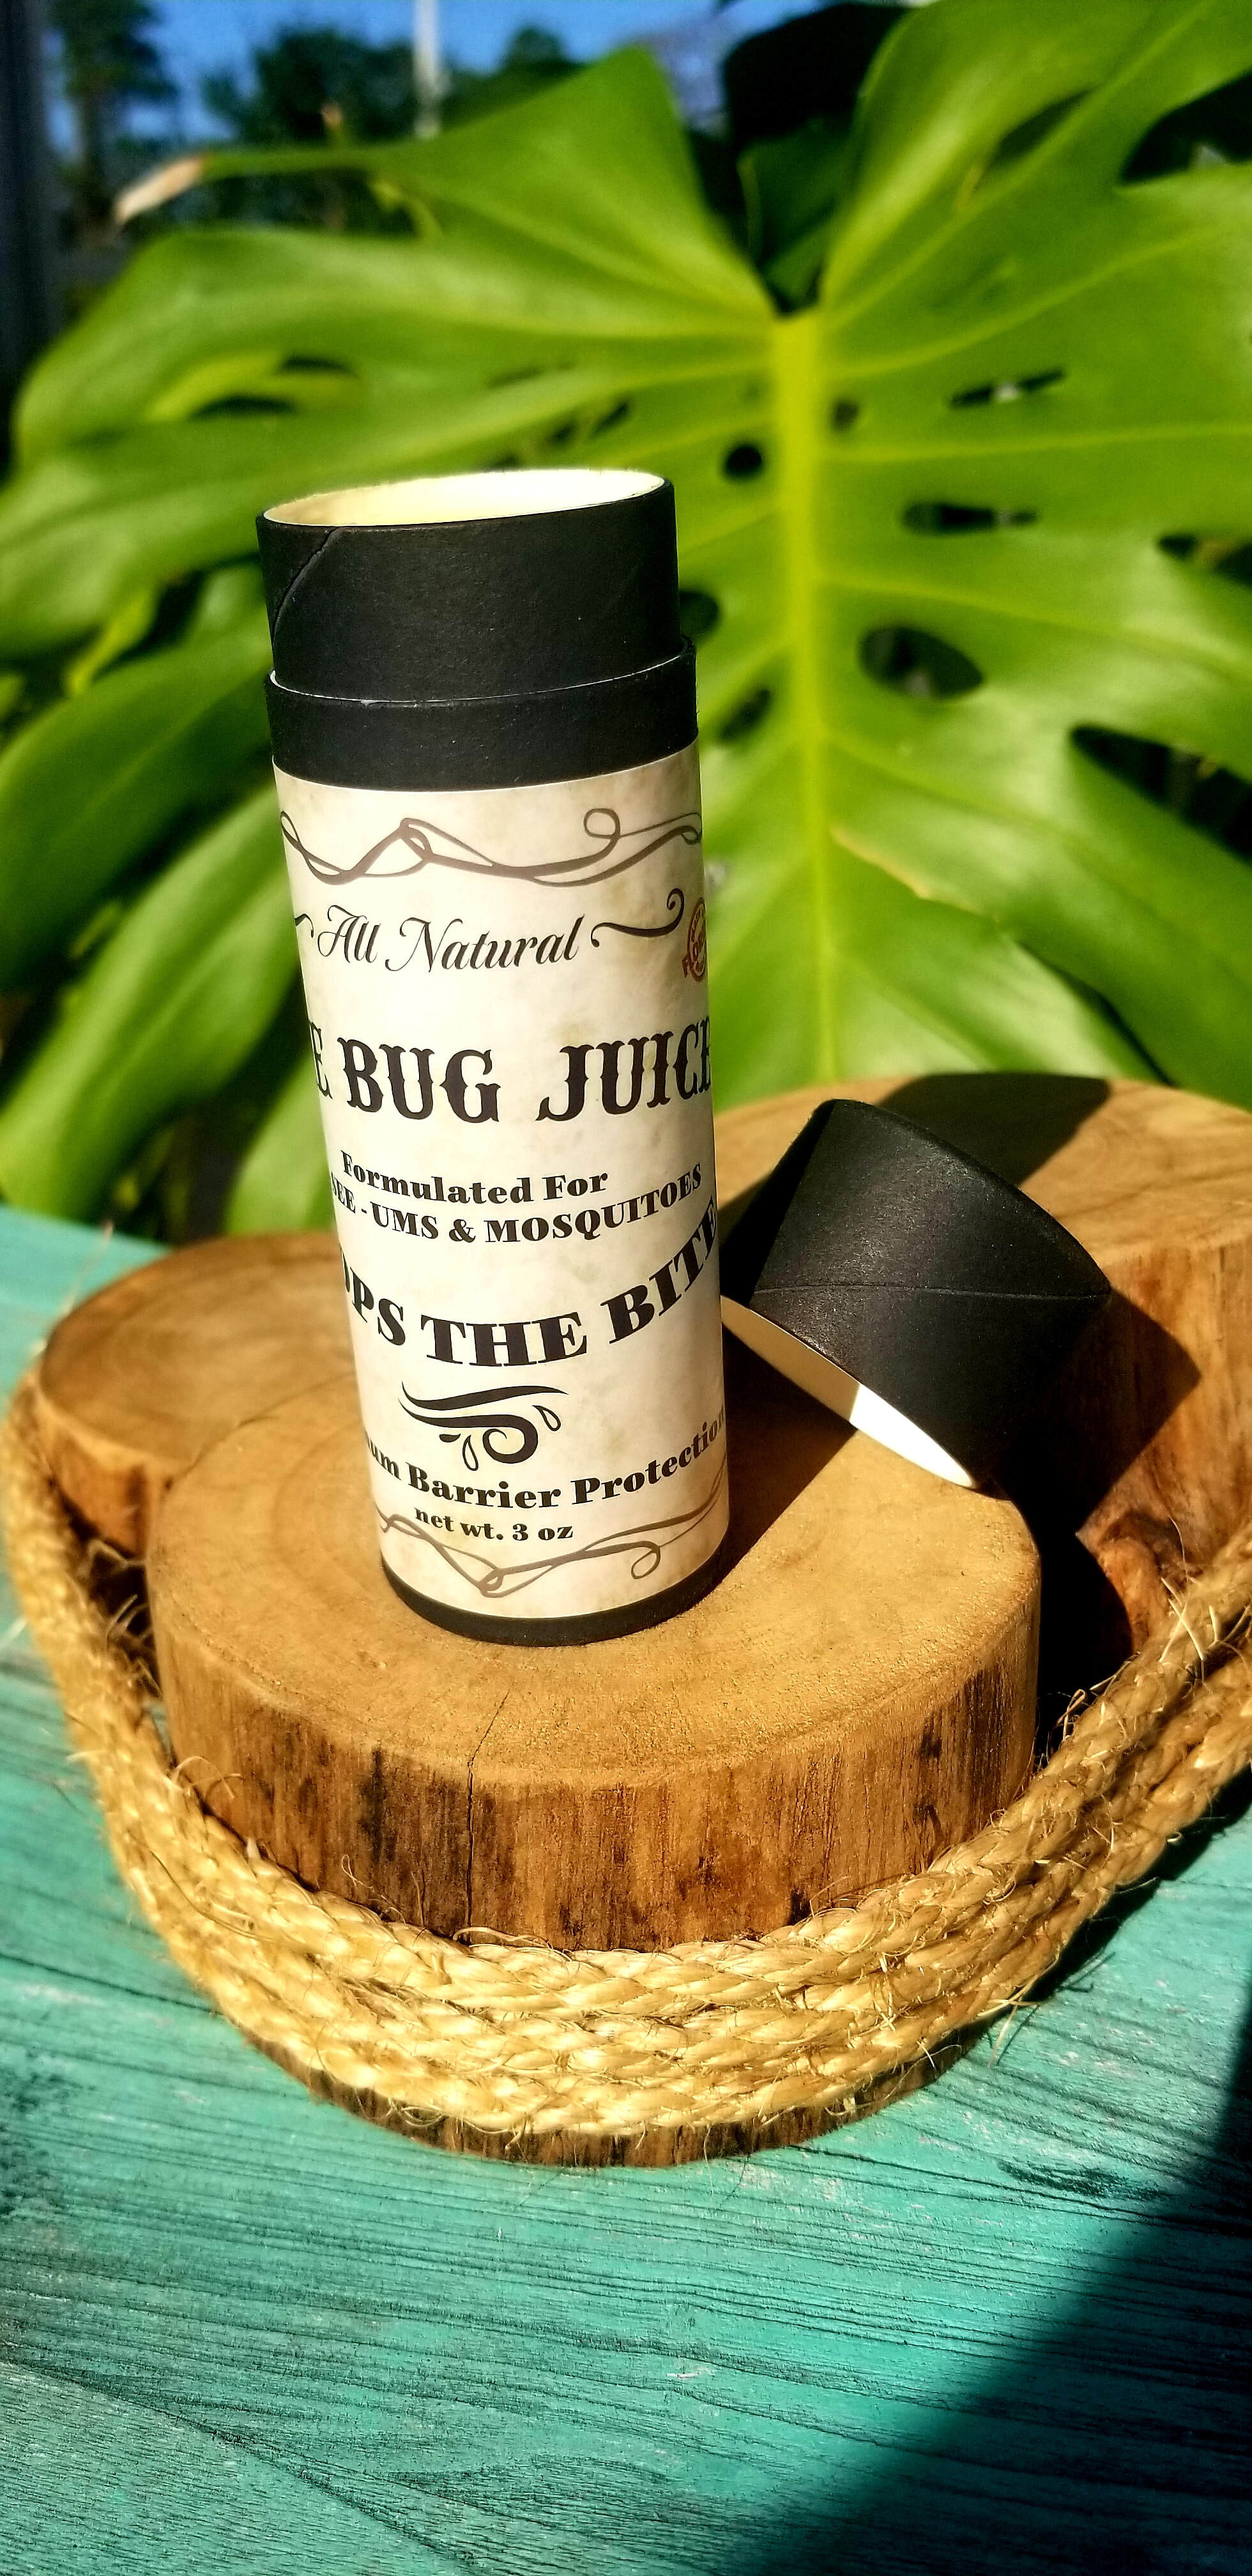 The Bug Juice Stick 3oz